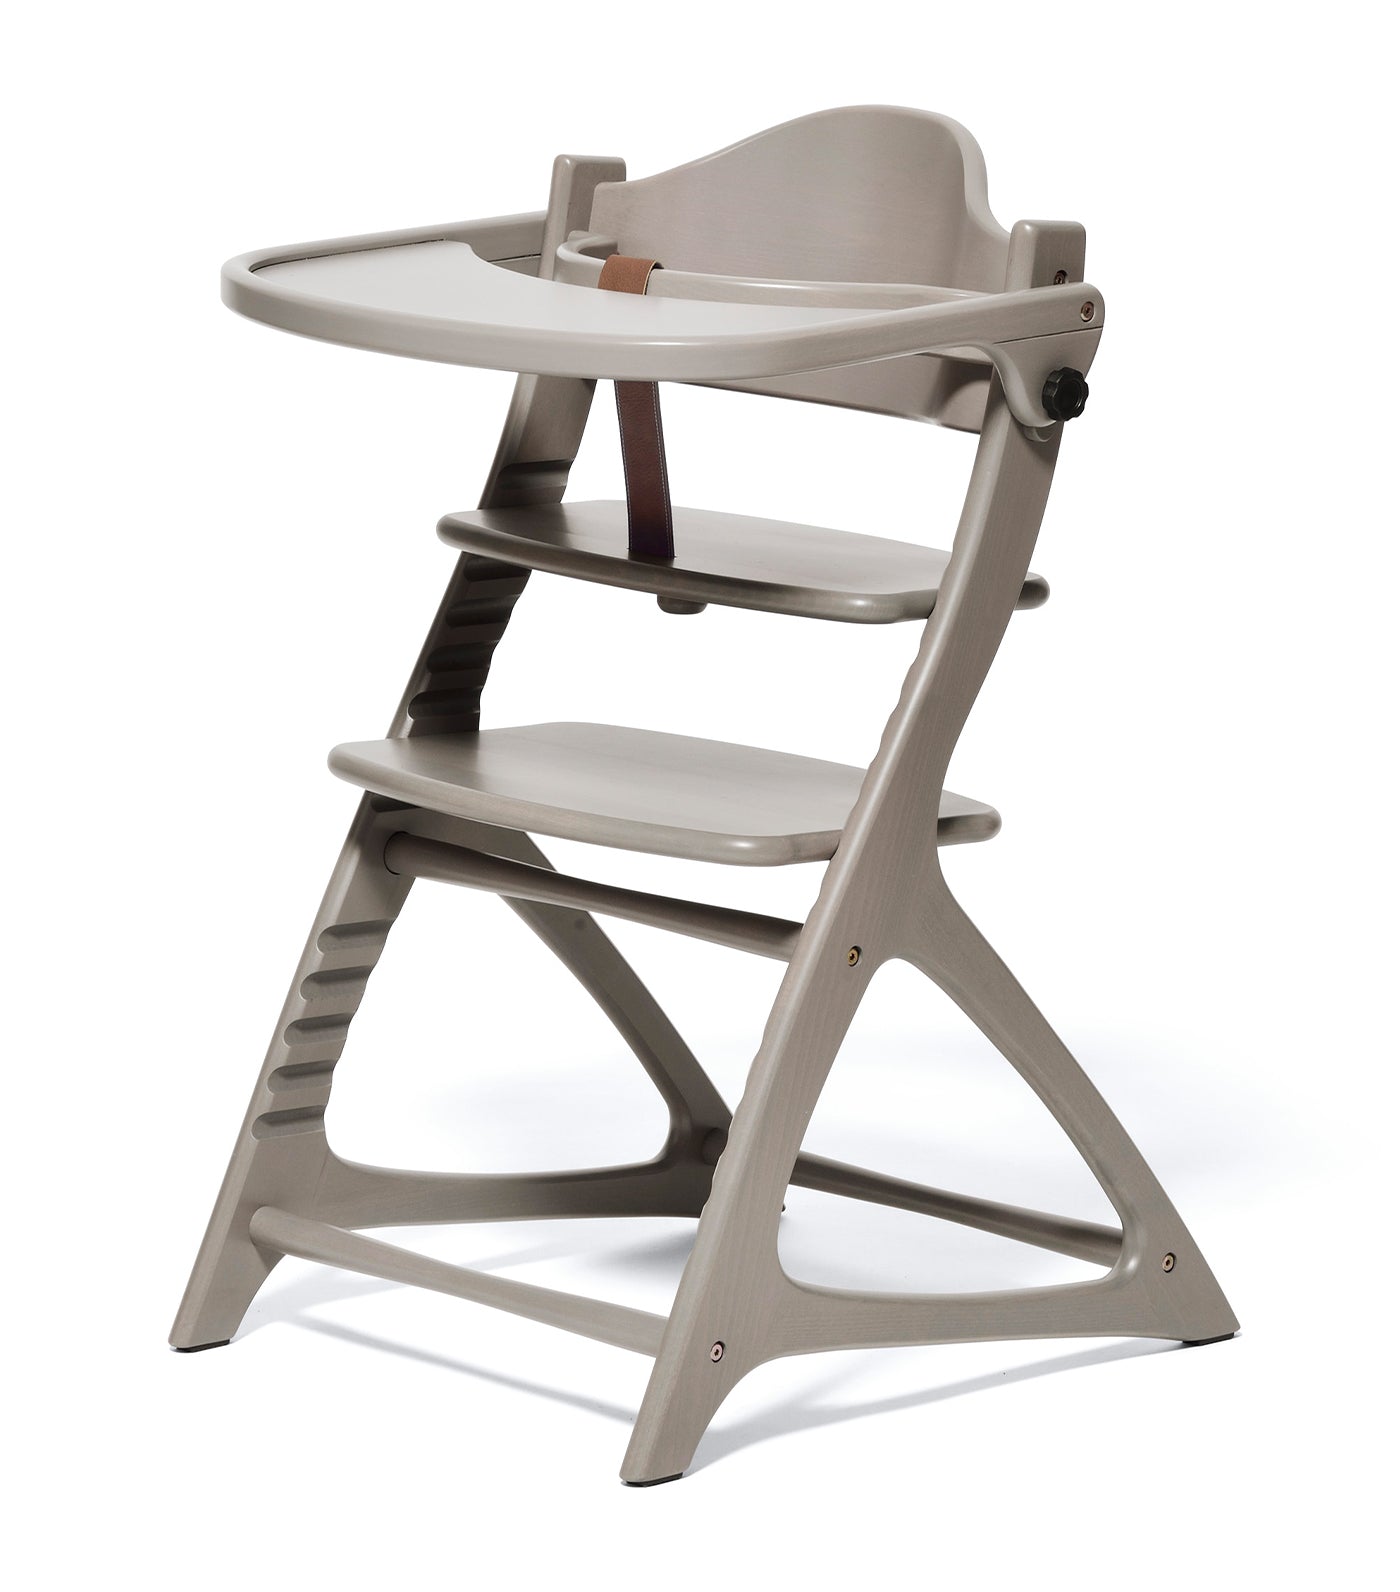 Materna Wooden High Chair - Gray